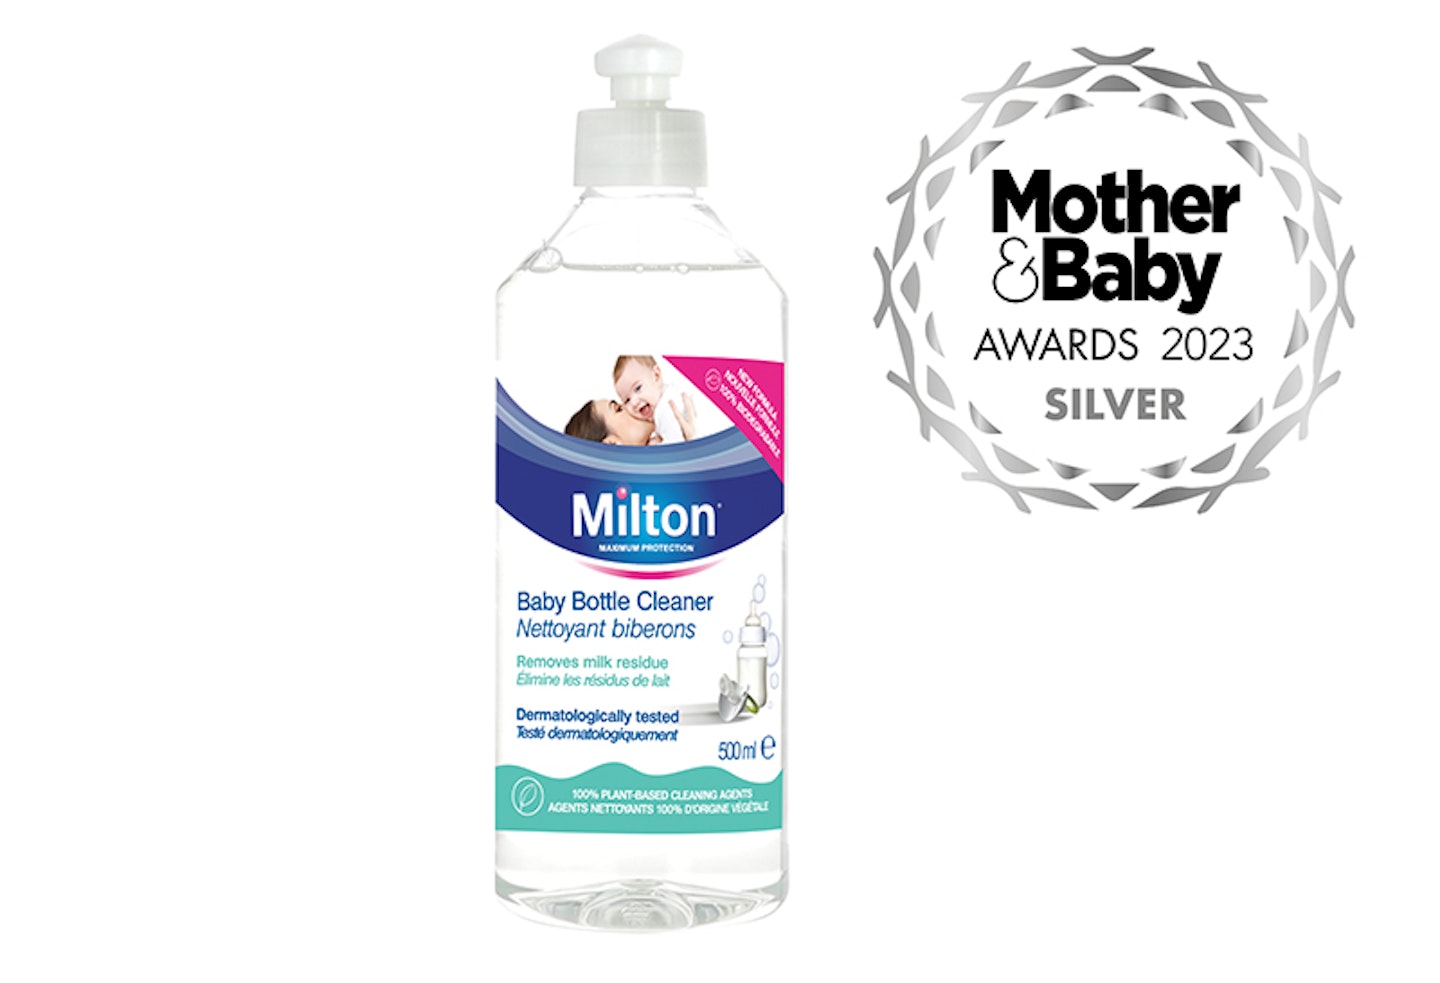 Milton Baby Bottle Cleaner M&B awards 2023